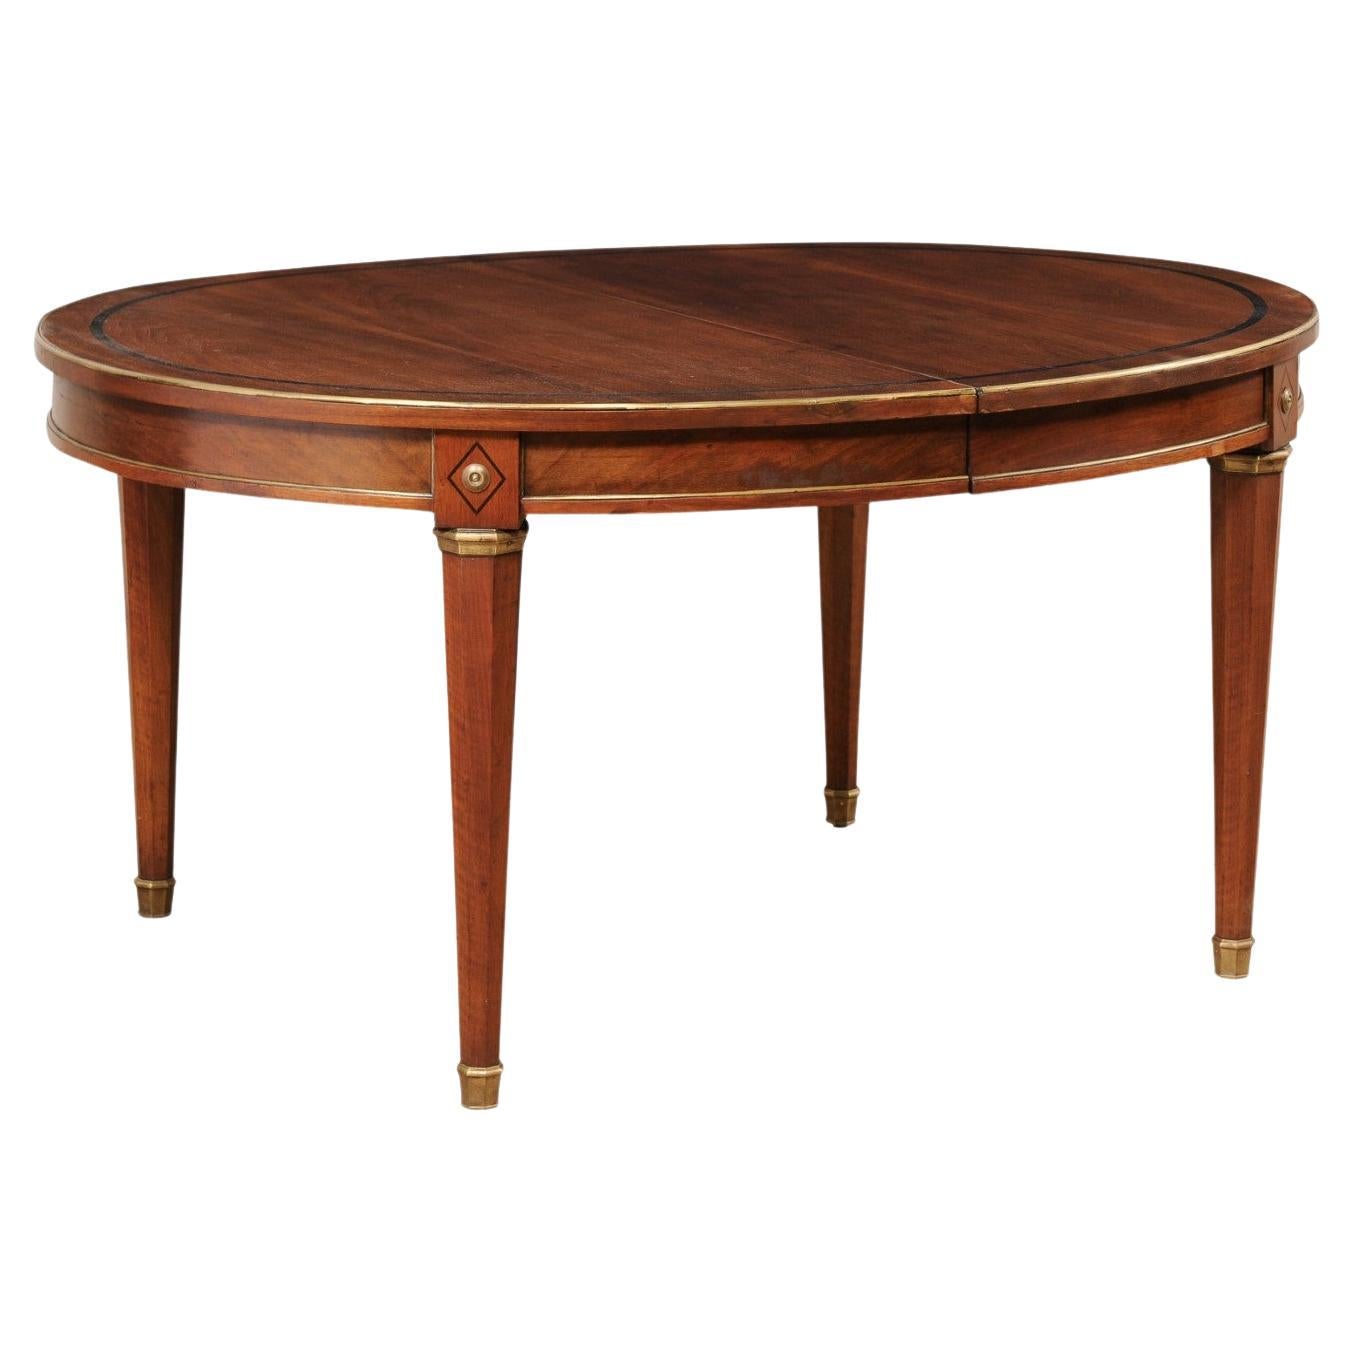 Table ovale de style néoclassique français avec garniture et accents en laiton (1 rallonge en forme de feuille) en vente